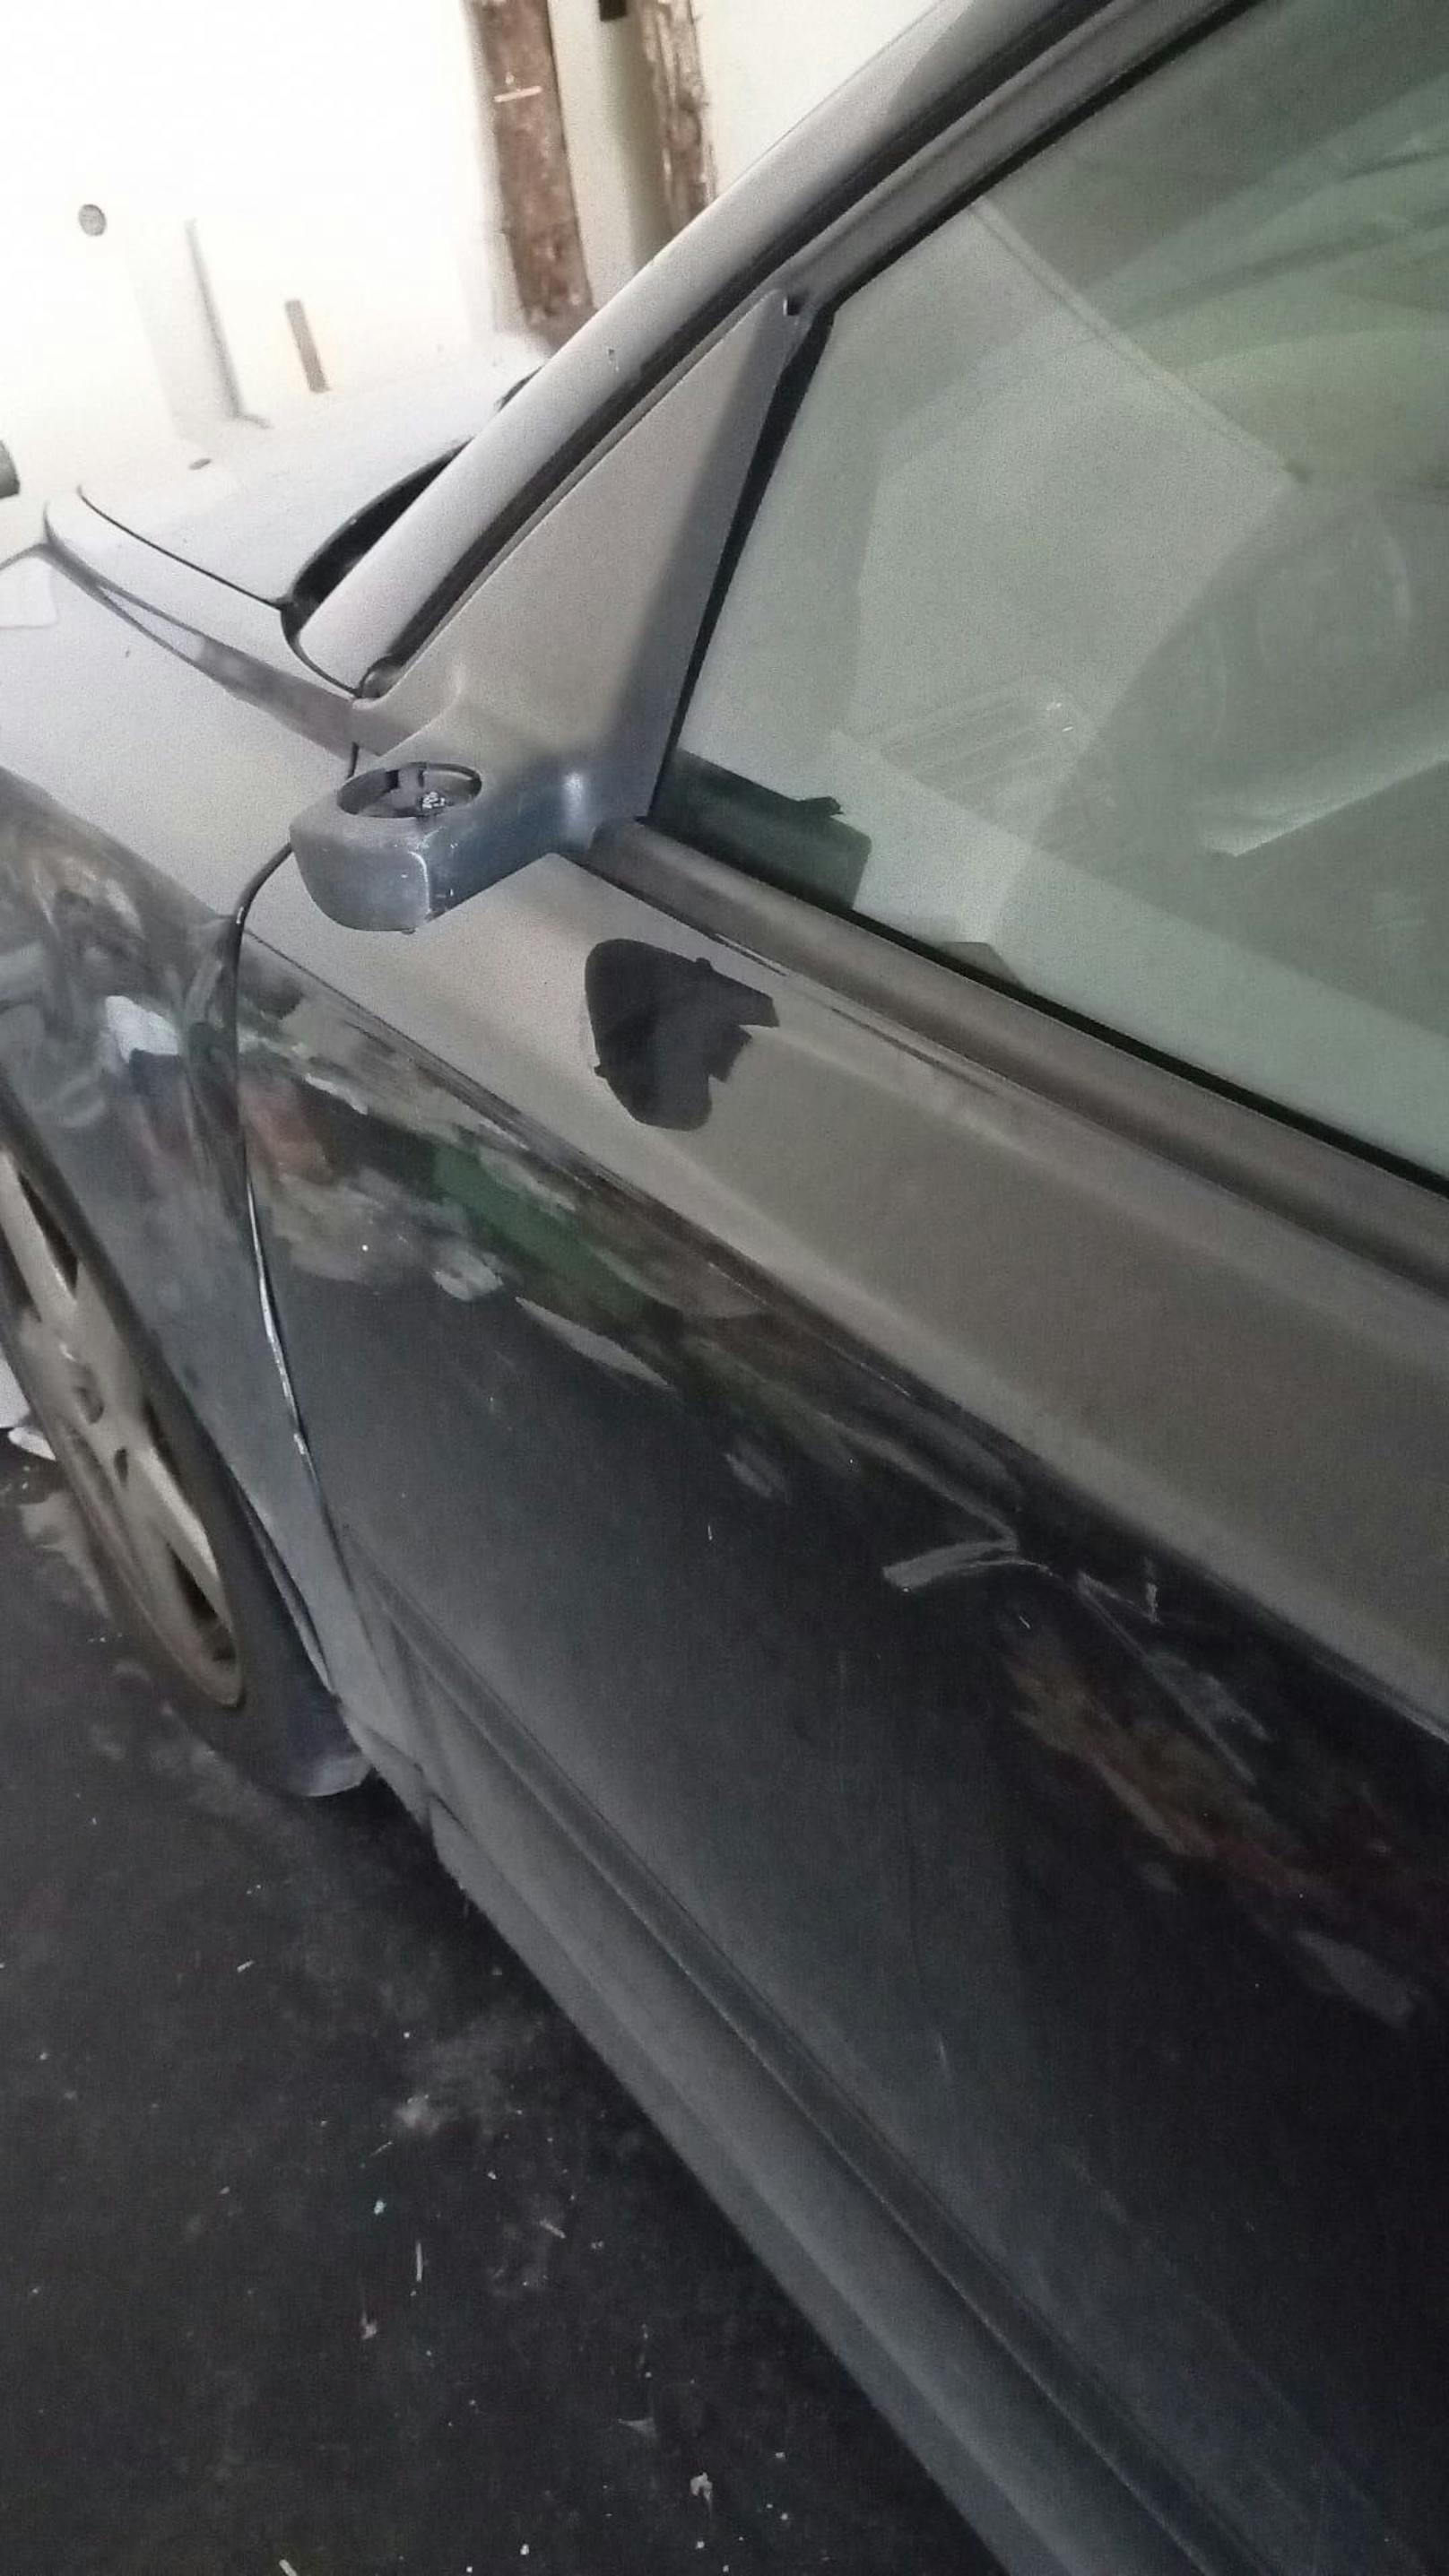 Heruntergerissene Spiegel von Wagen des 57-Jährigen